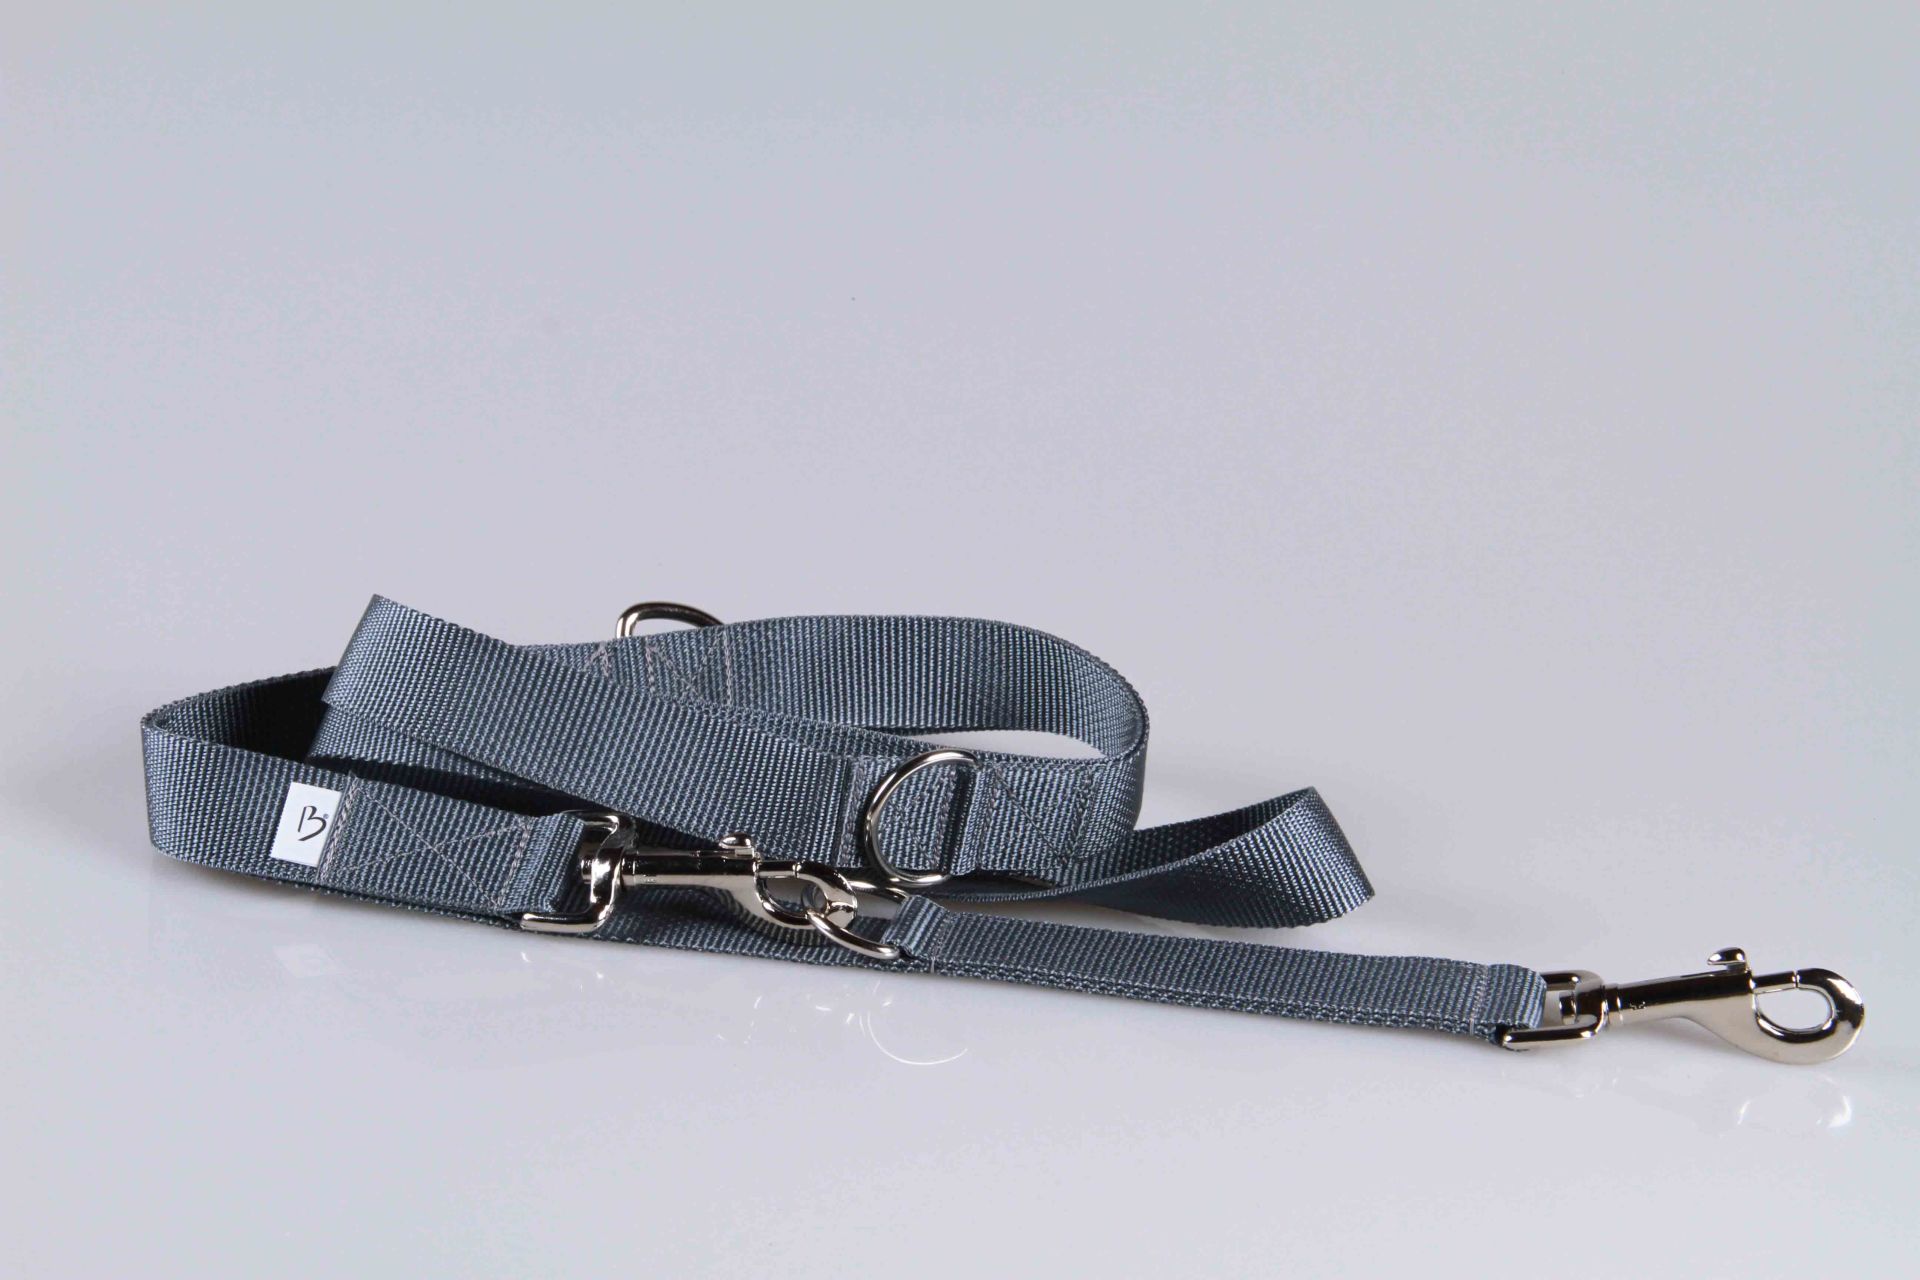 Hundeleine  -  Universal  -  Längenverstellbar  -  220 cm lang  -  30 mm breit  -  Grau